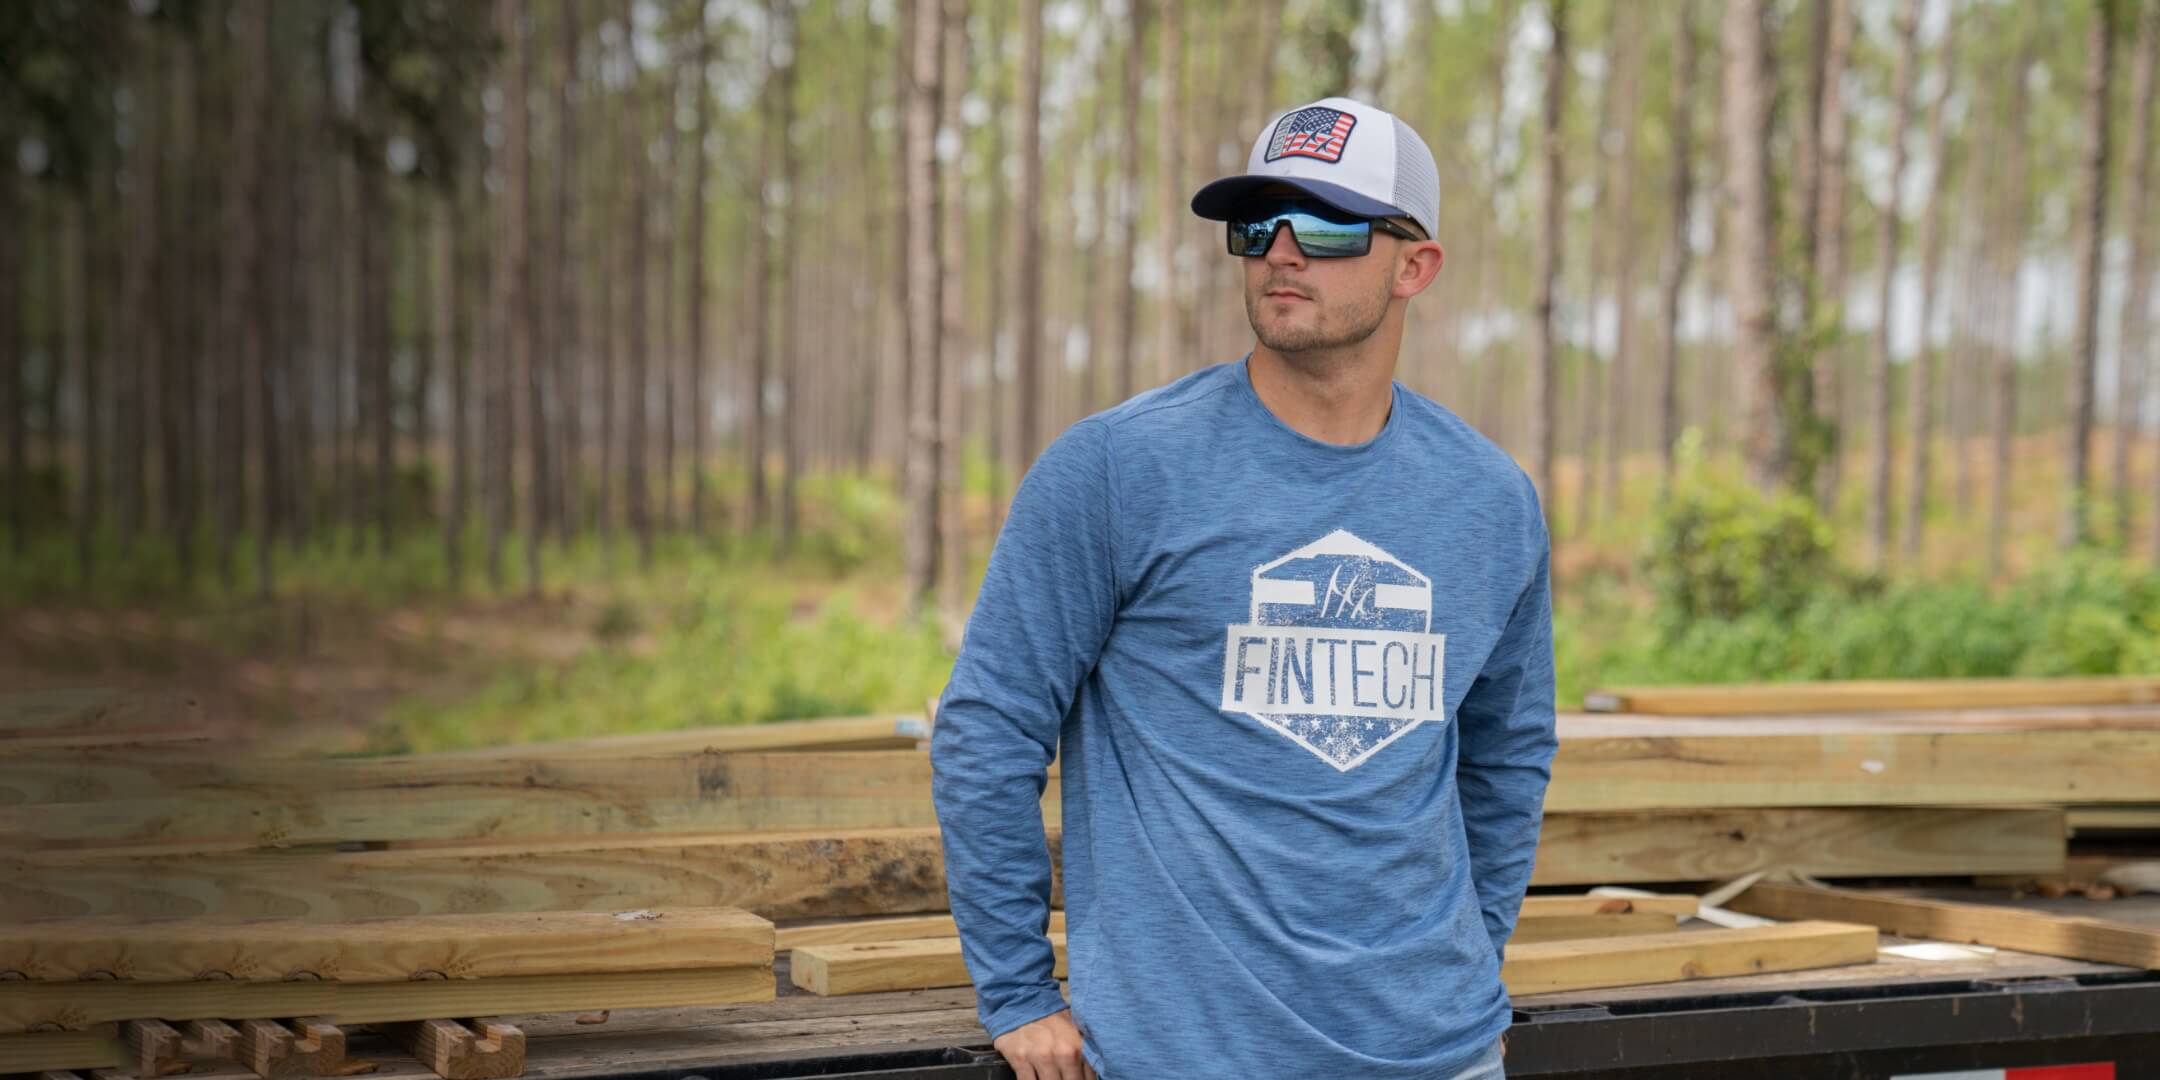 Fintech Shirt Mens XL Blue Fishing Gear Vented Outdoor Wear Casual Sport  Button